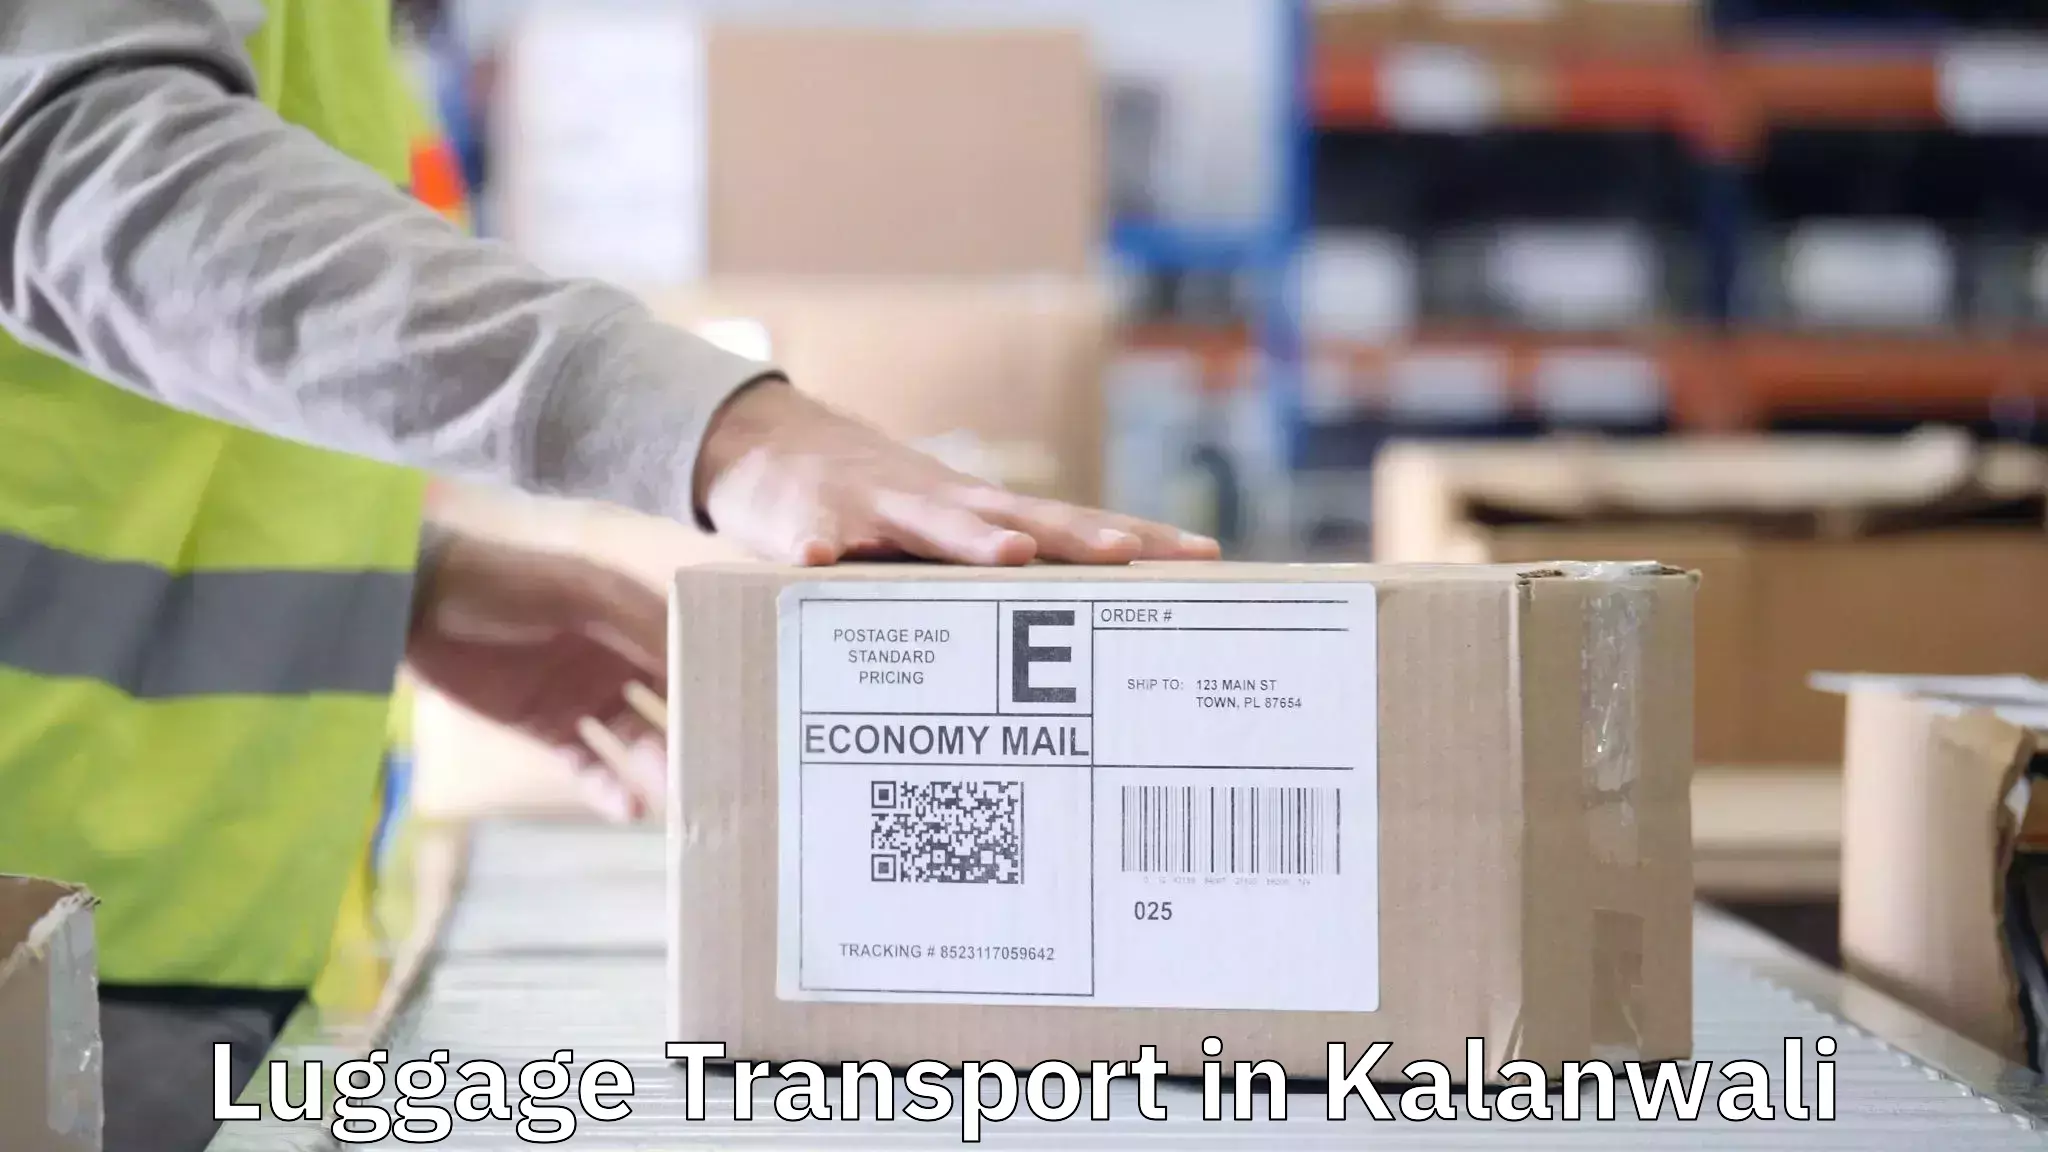 Baggage transport estimate in Kalanwali